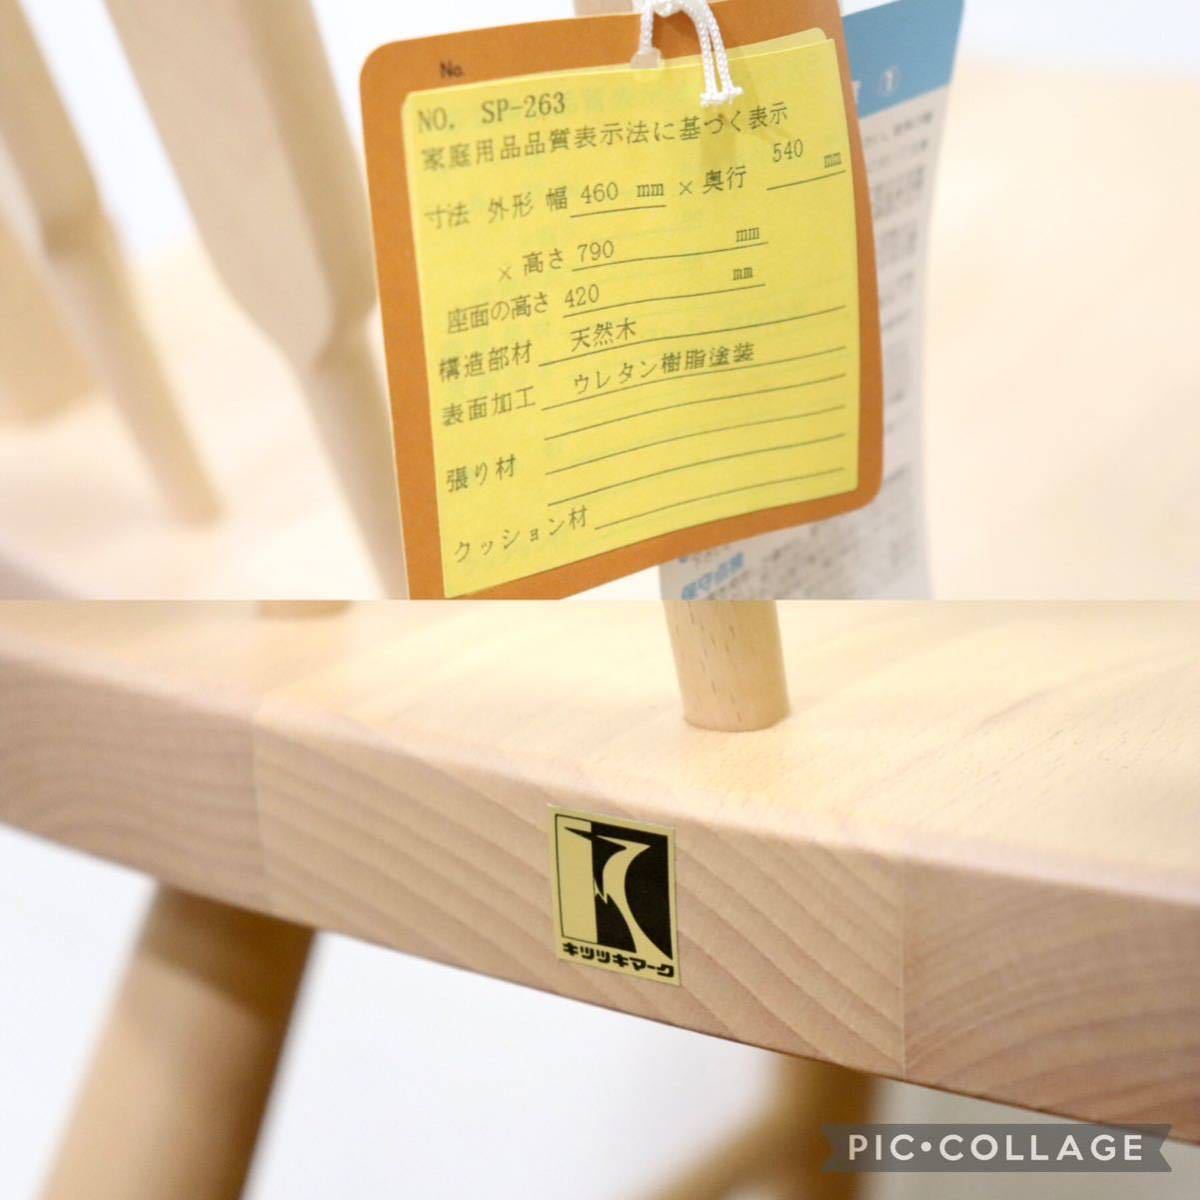 GMGN289F○飛騨産業 / HIDA キツツキ ダイニングチェア 椅子 ブナ材 レトロ カントリー 北欧スタイル 未使用在庫品